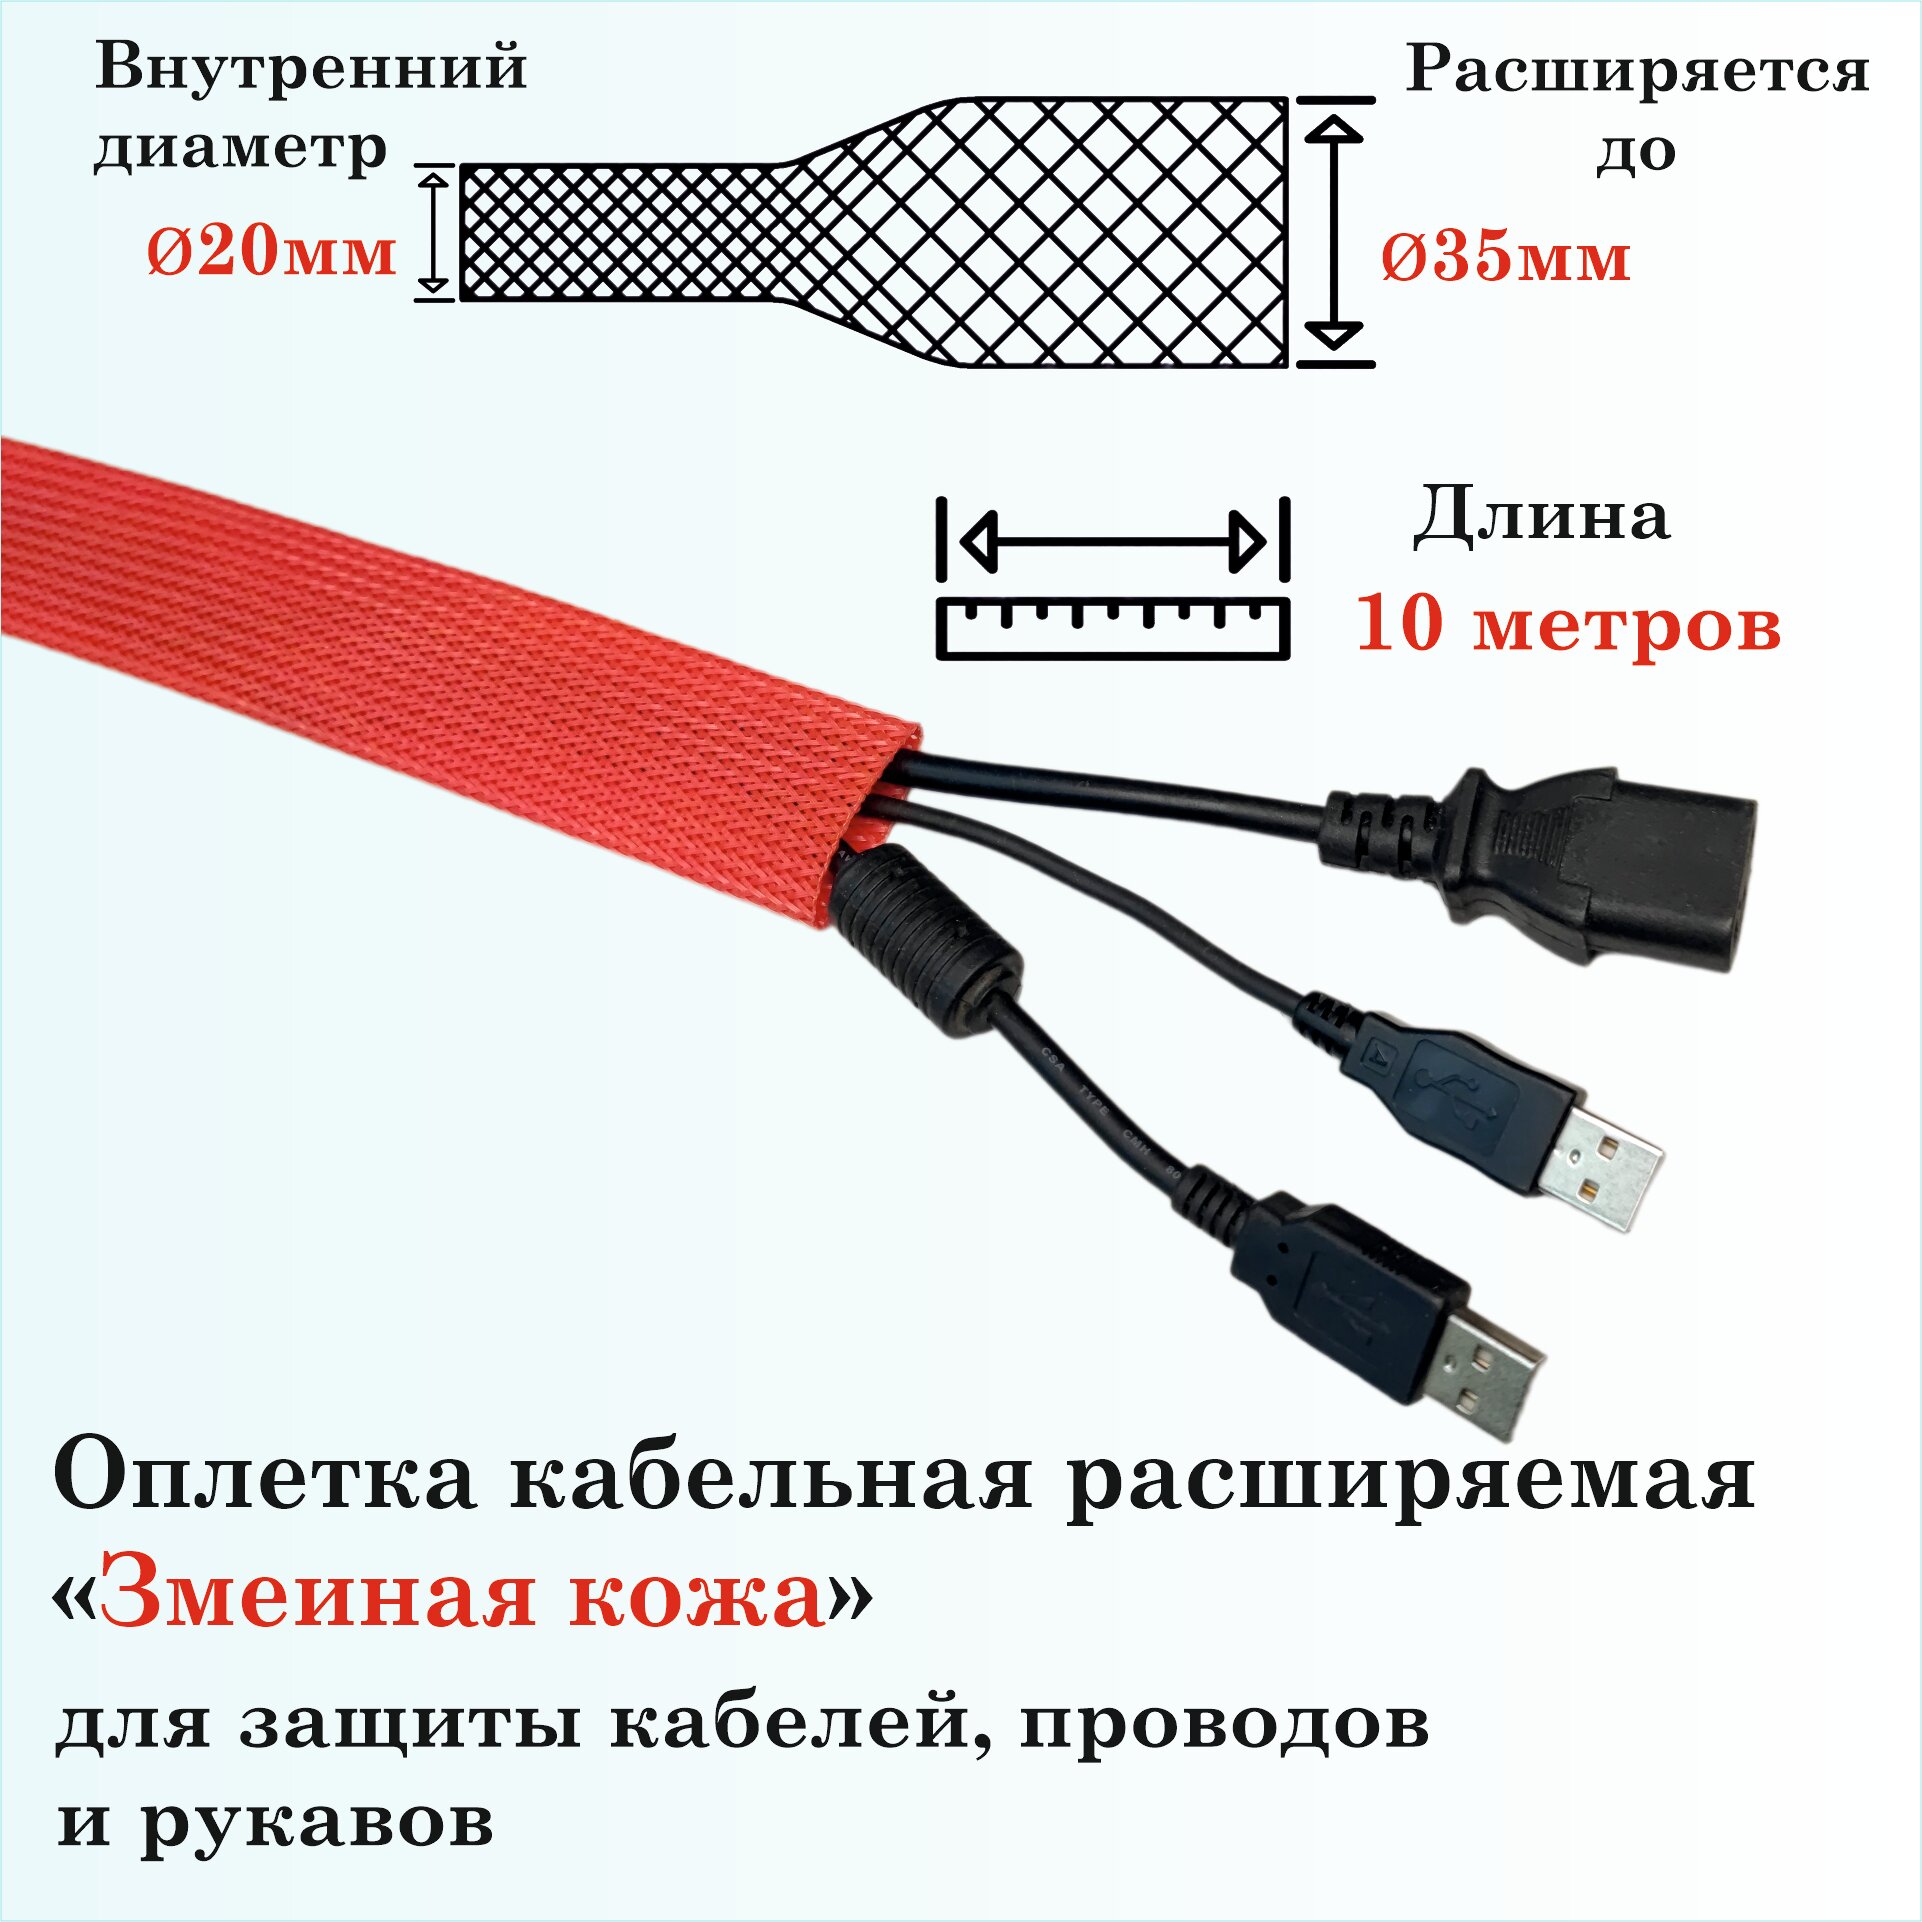 Оплетка кабельная расширяемая для защиты кабелей и проводов "Змеиная кожа" 20мм, 10м, красная